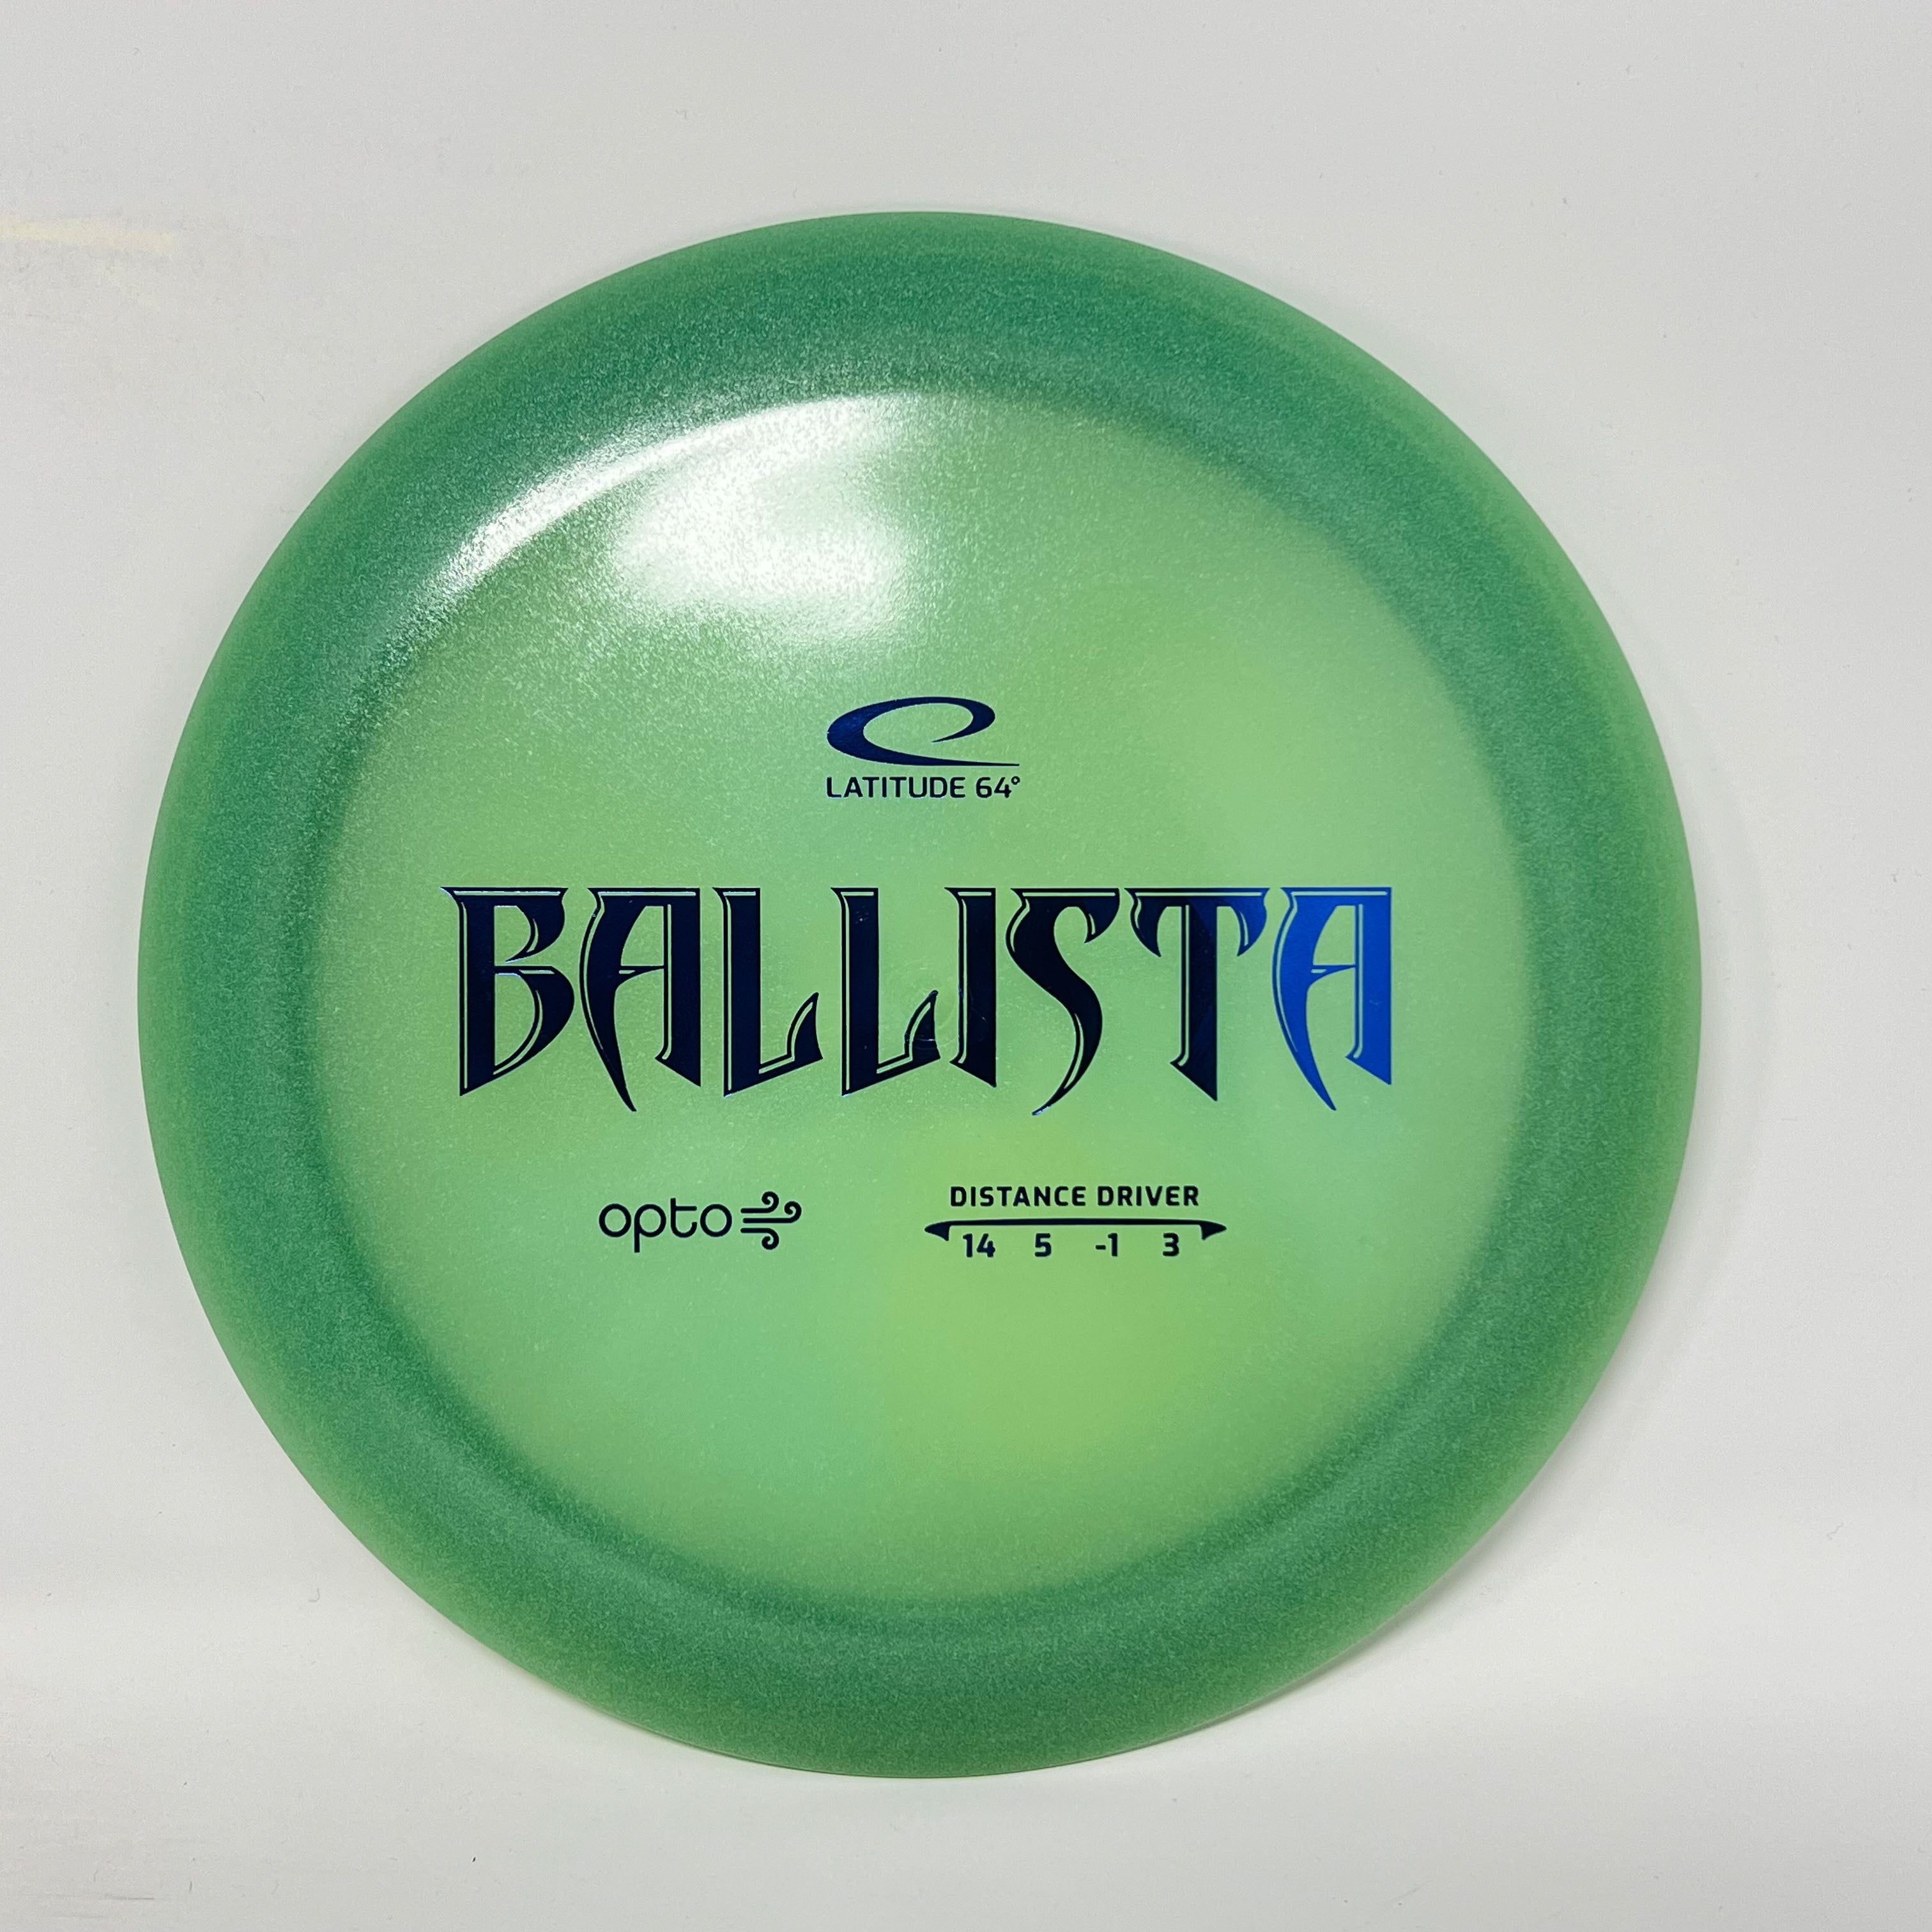 Latitude 64 Opto Air Ballista